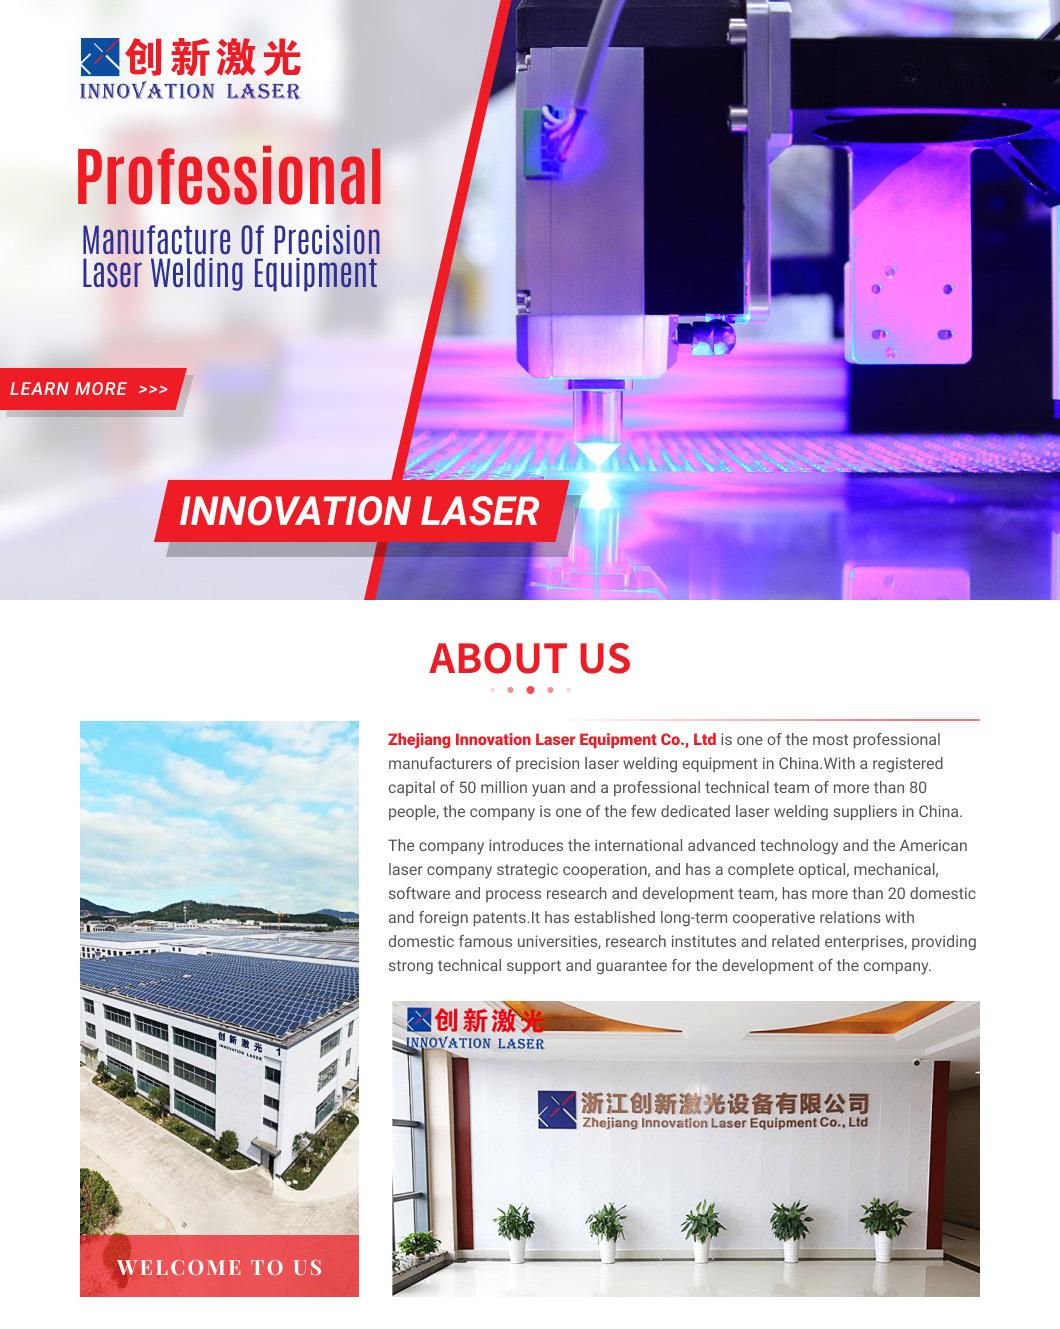 Qbh Optical Fiber Chuangxin Wooden Box Fibre Hand Laser Welding Machine